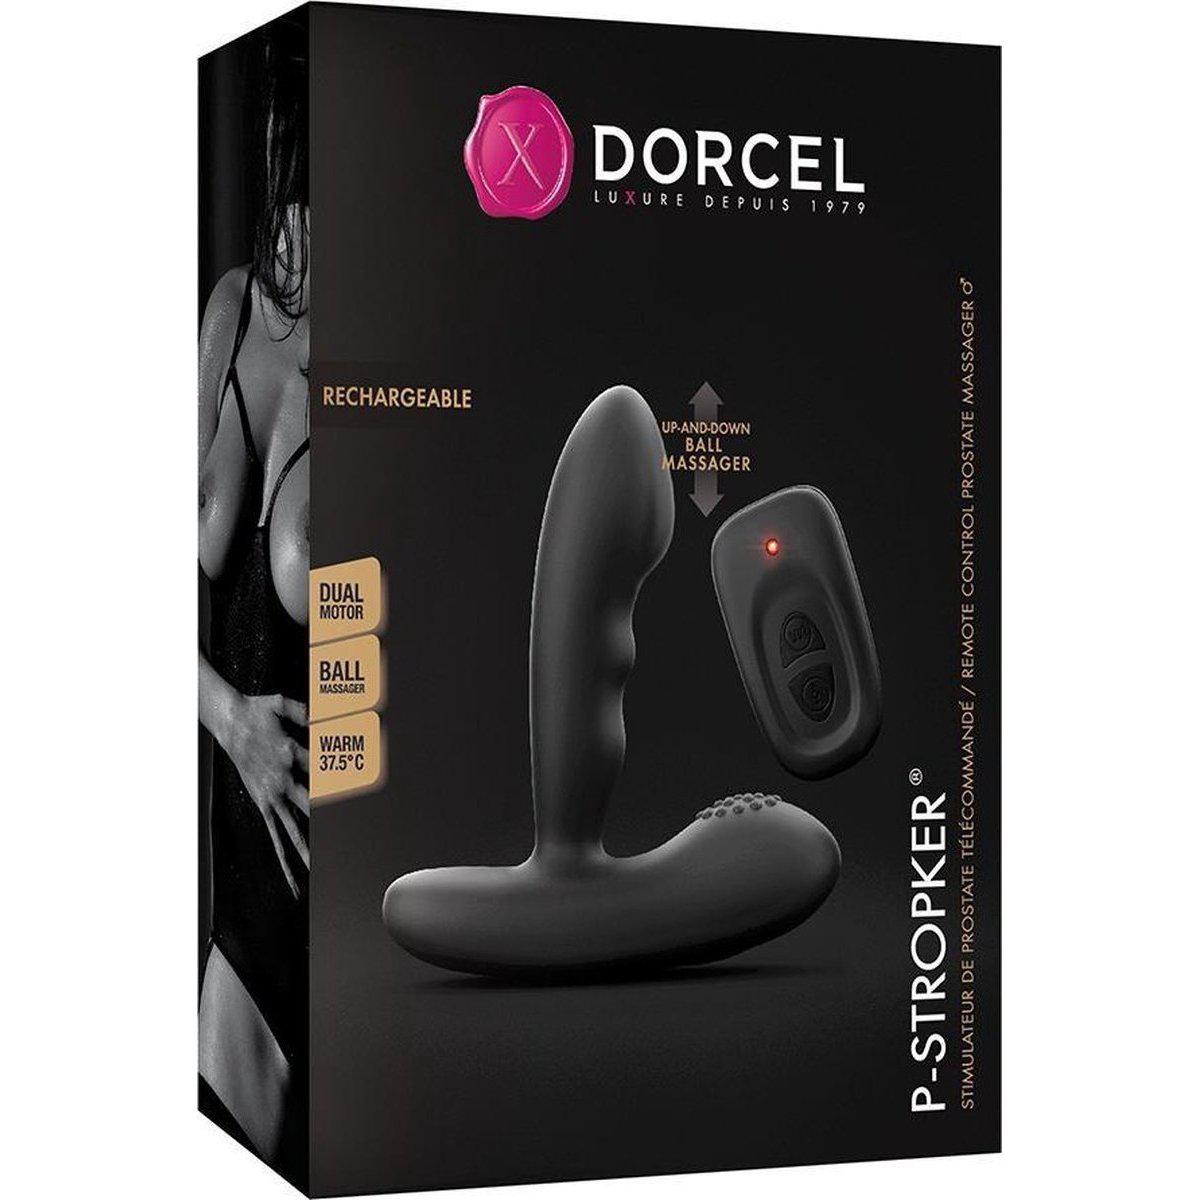 Dorcel P-Stroker Remote Control Prostate Massager